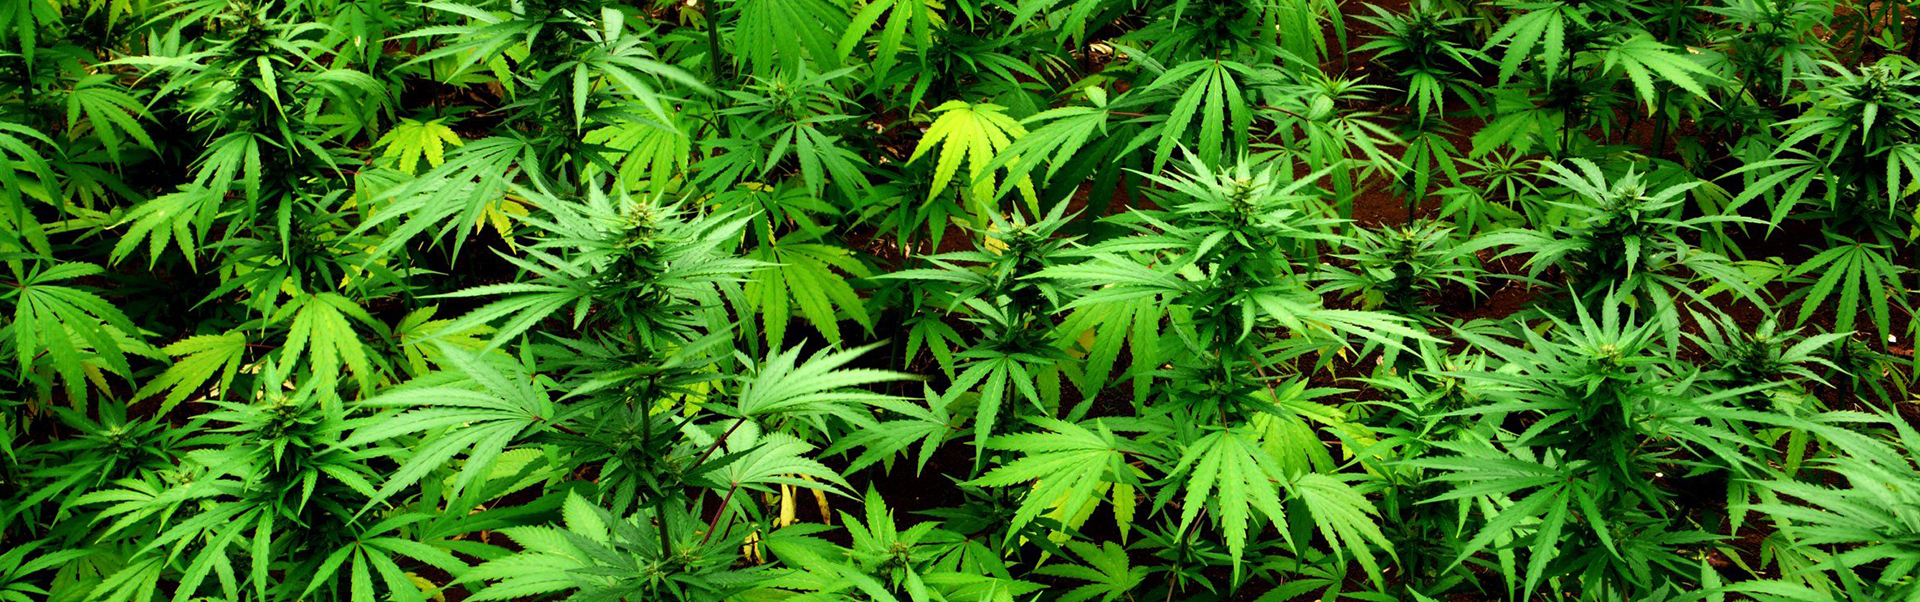 cannabis-field-9-web-banner